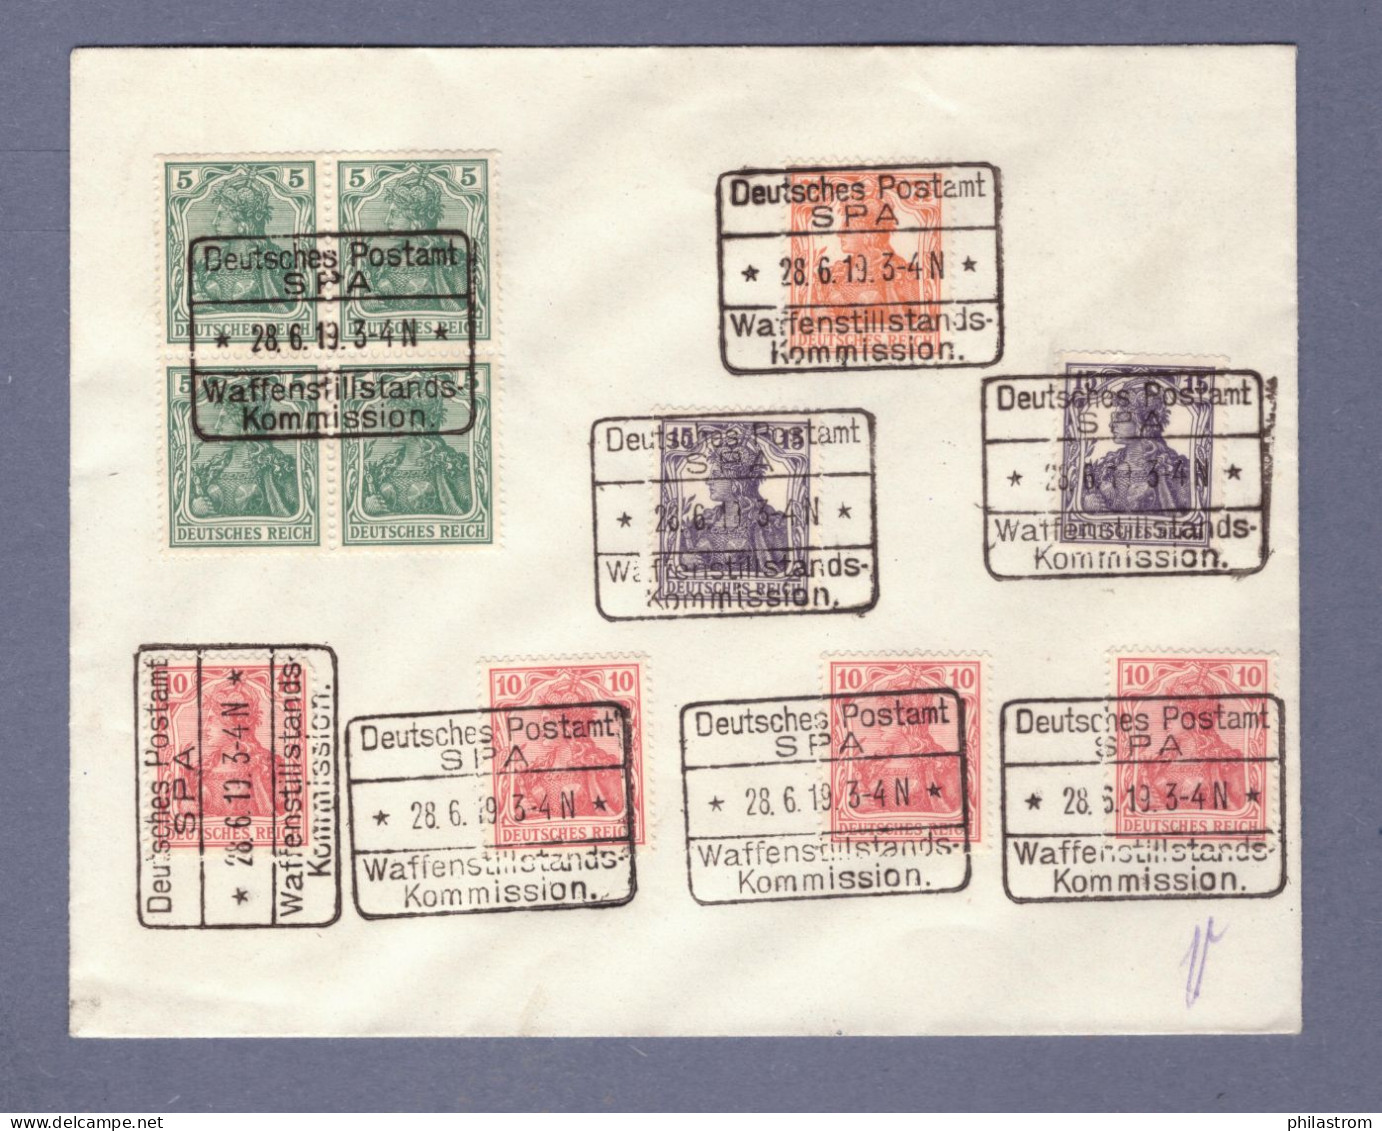 Weimar Brief - Deutsches Postamt SPA - Waffenstillstands Kommission 28.9.19 (CG13110-268) - Lettres & Documents